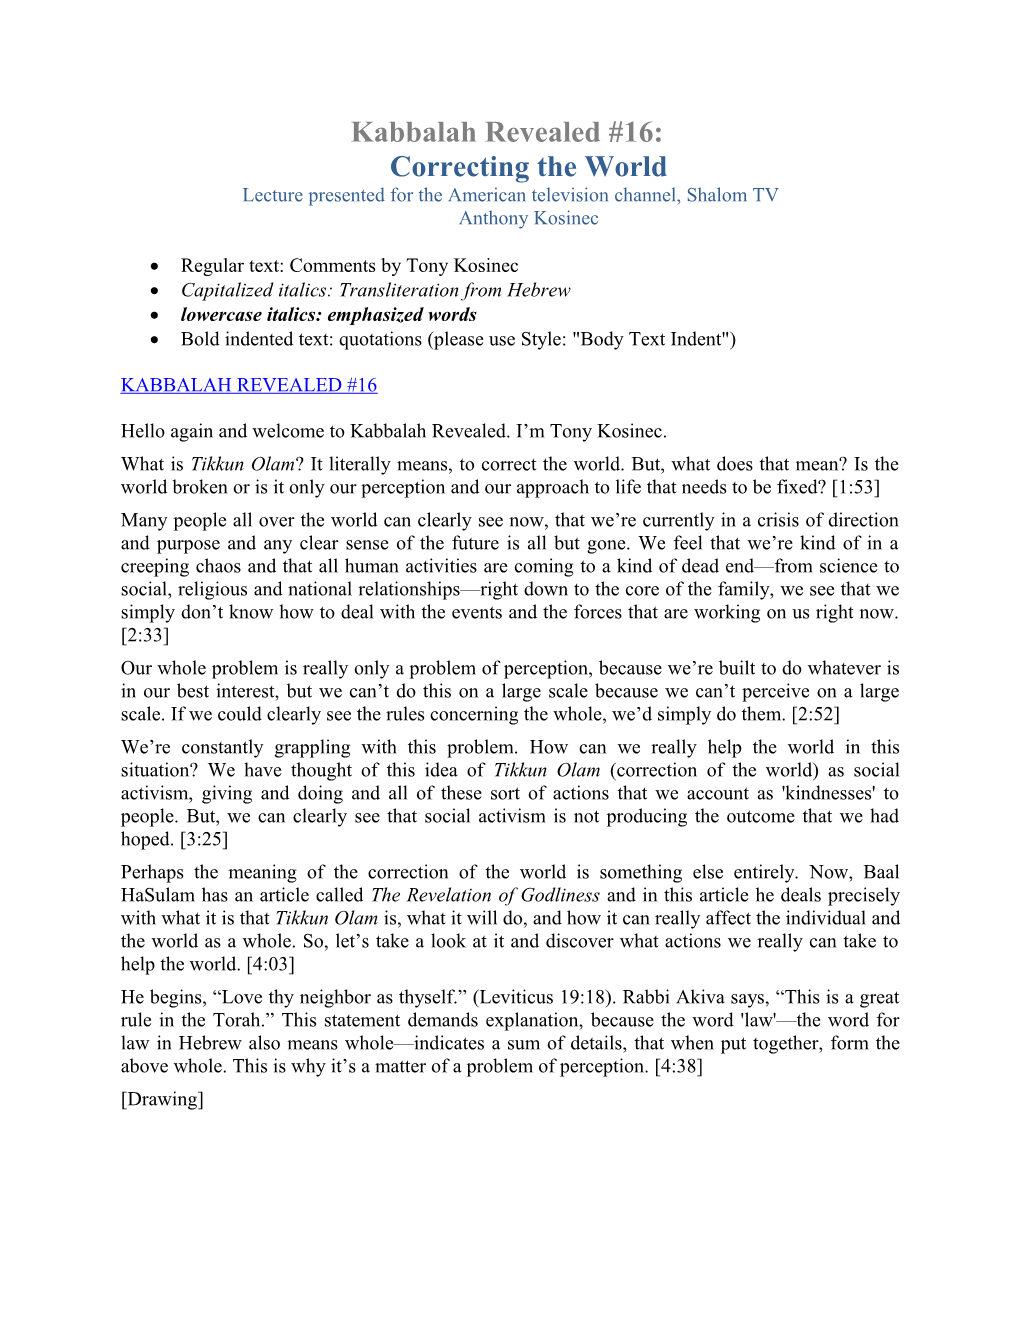 Kabbalah Revealed #16: Correcting the World